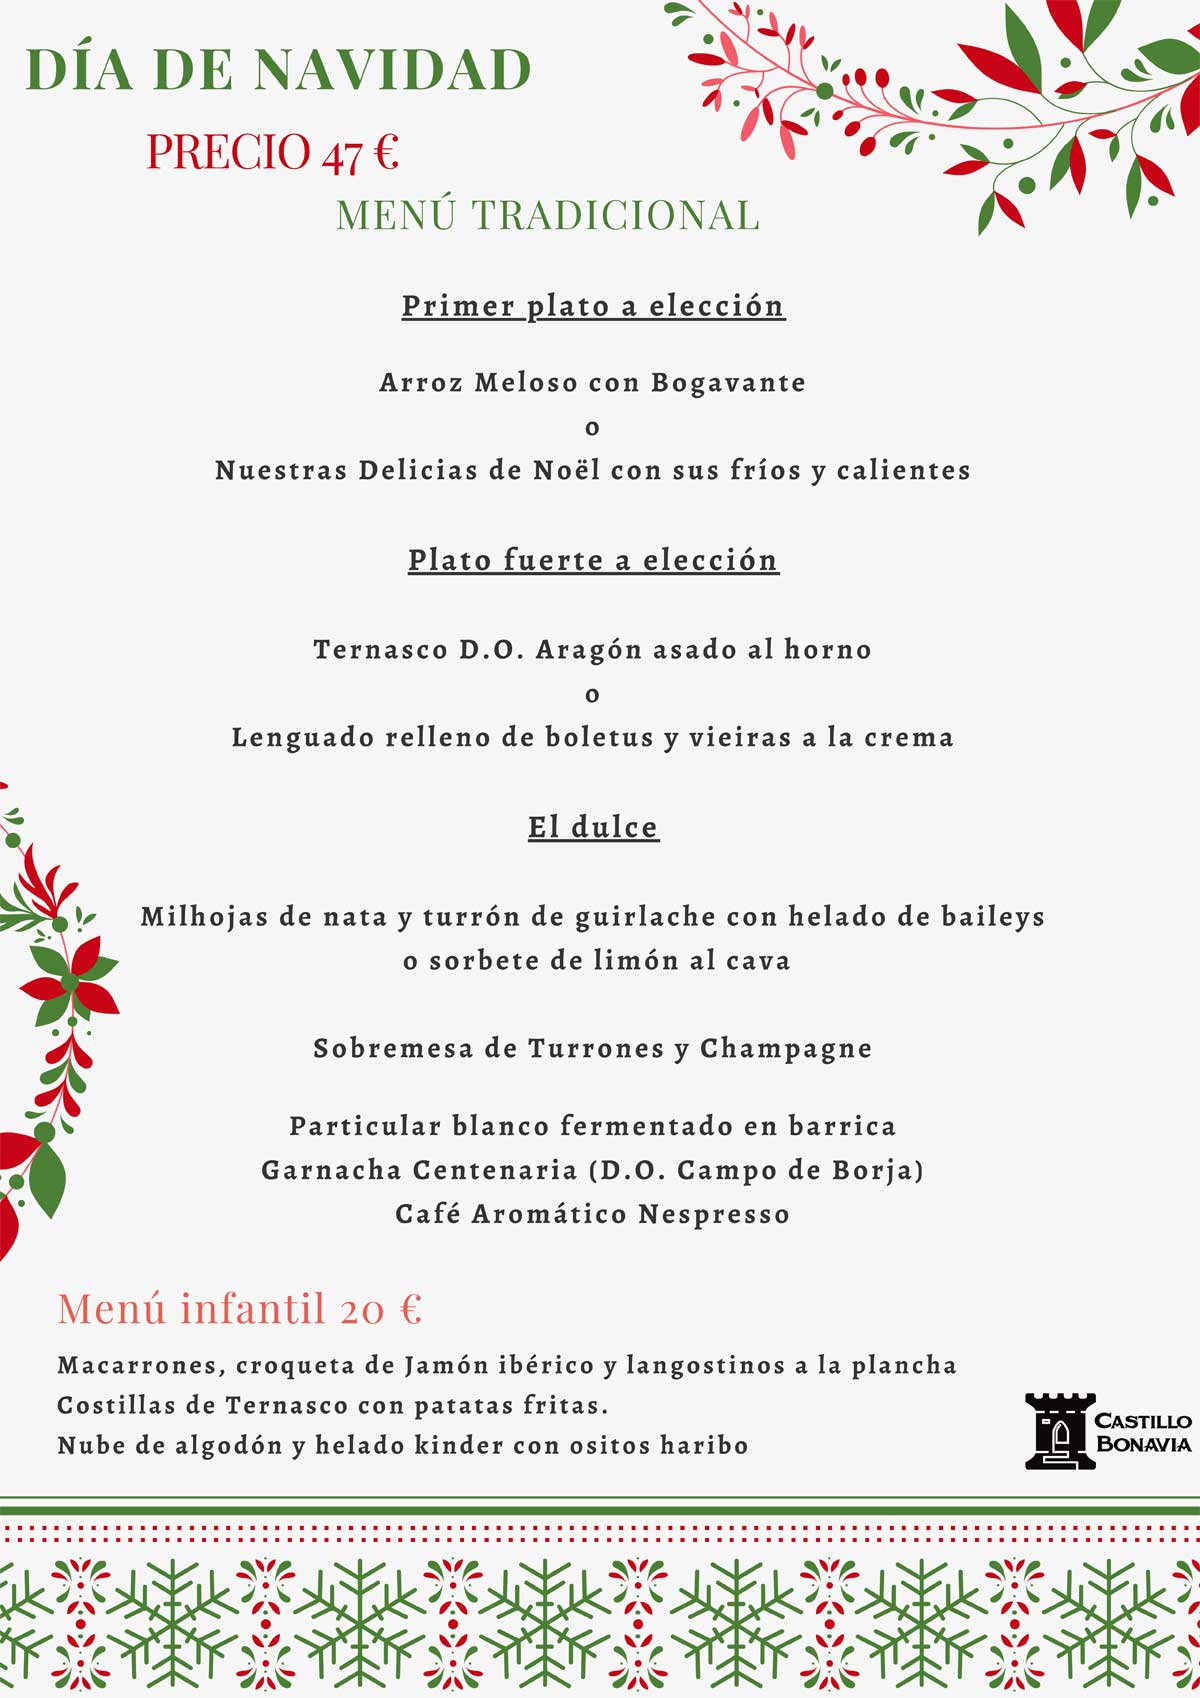 Menú-Tradicional-Día-Navidad-2021-Castillo-Bonavía